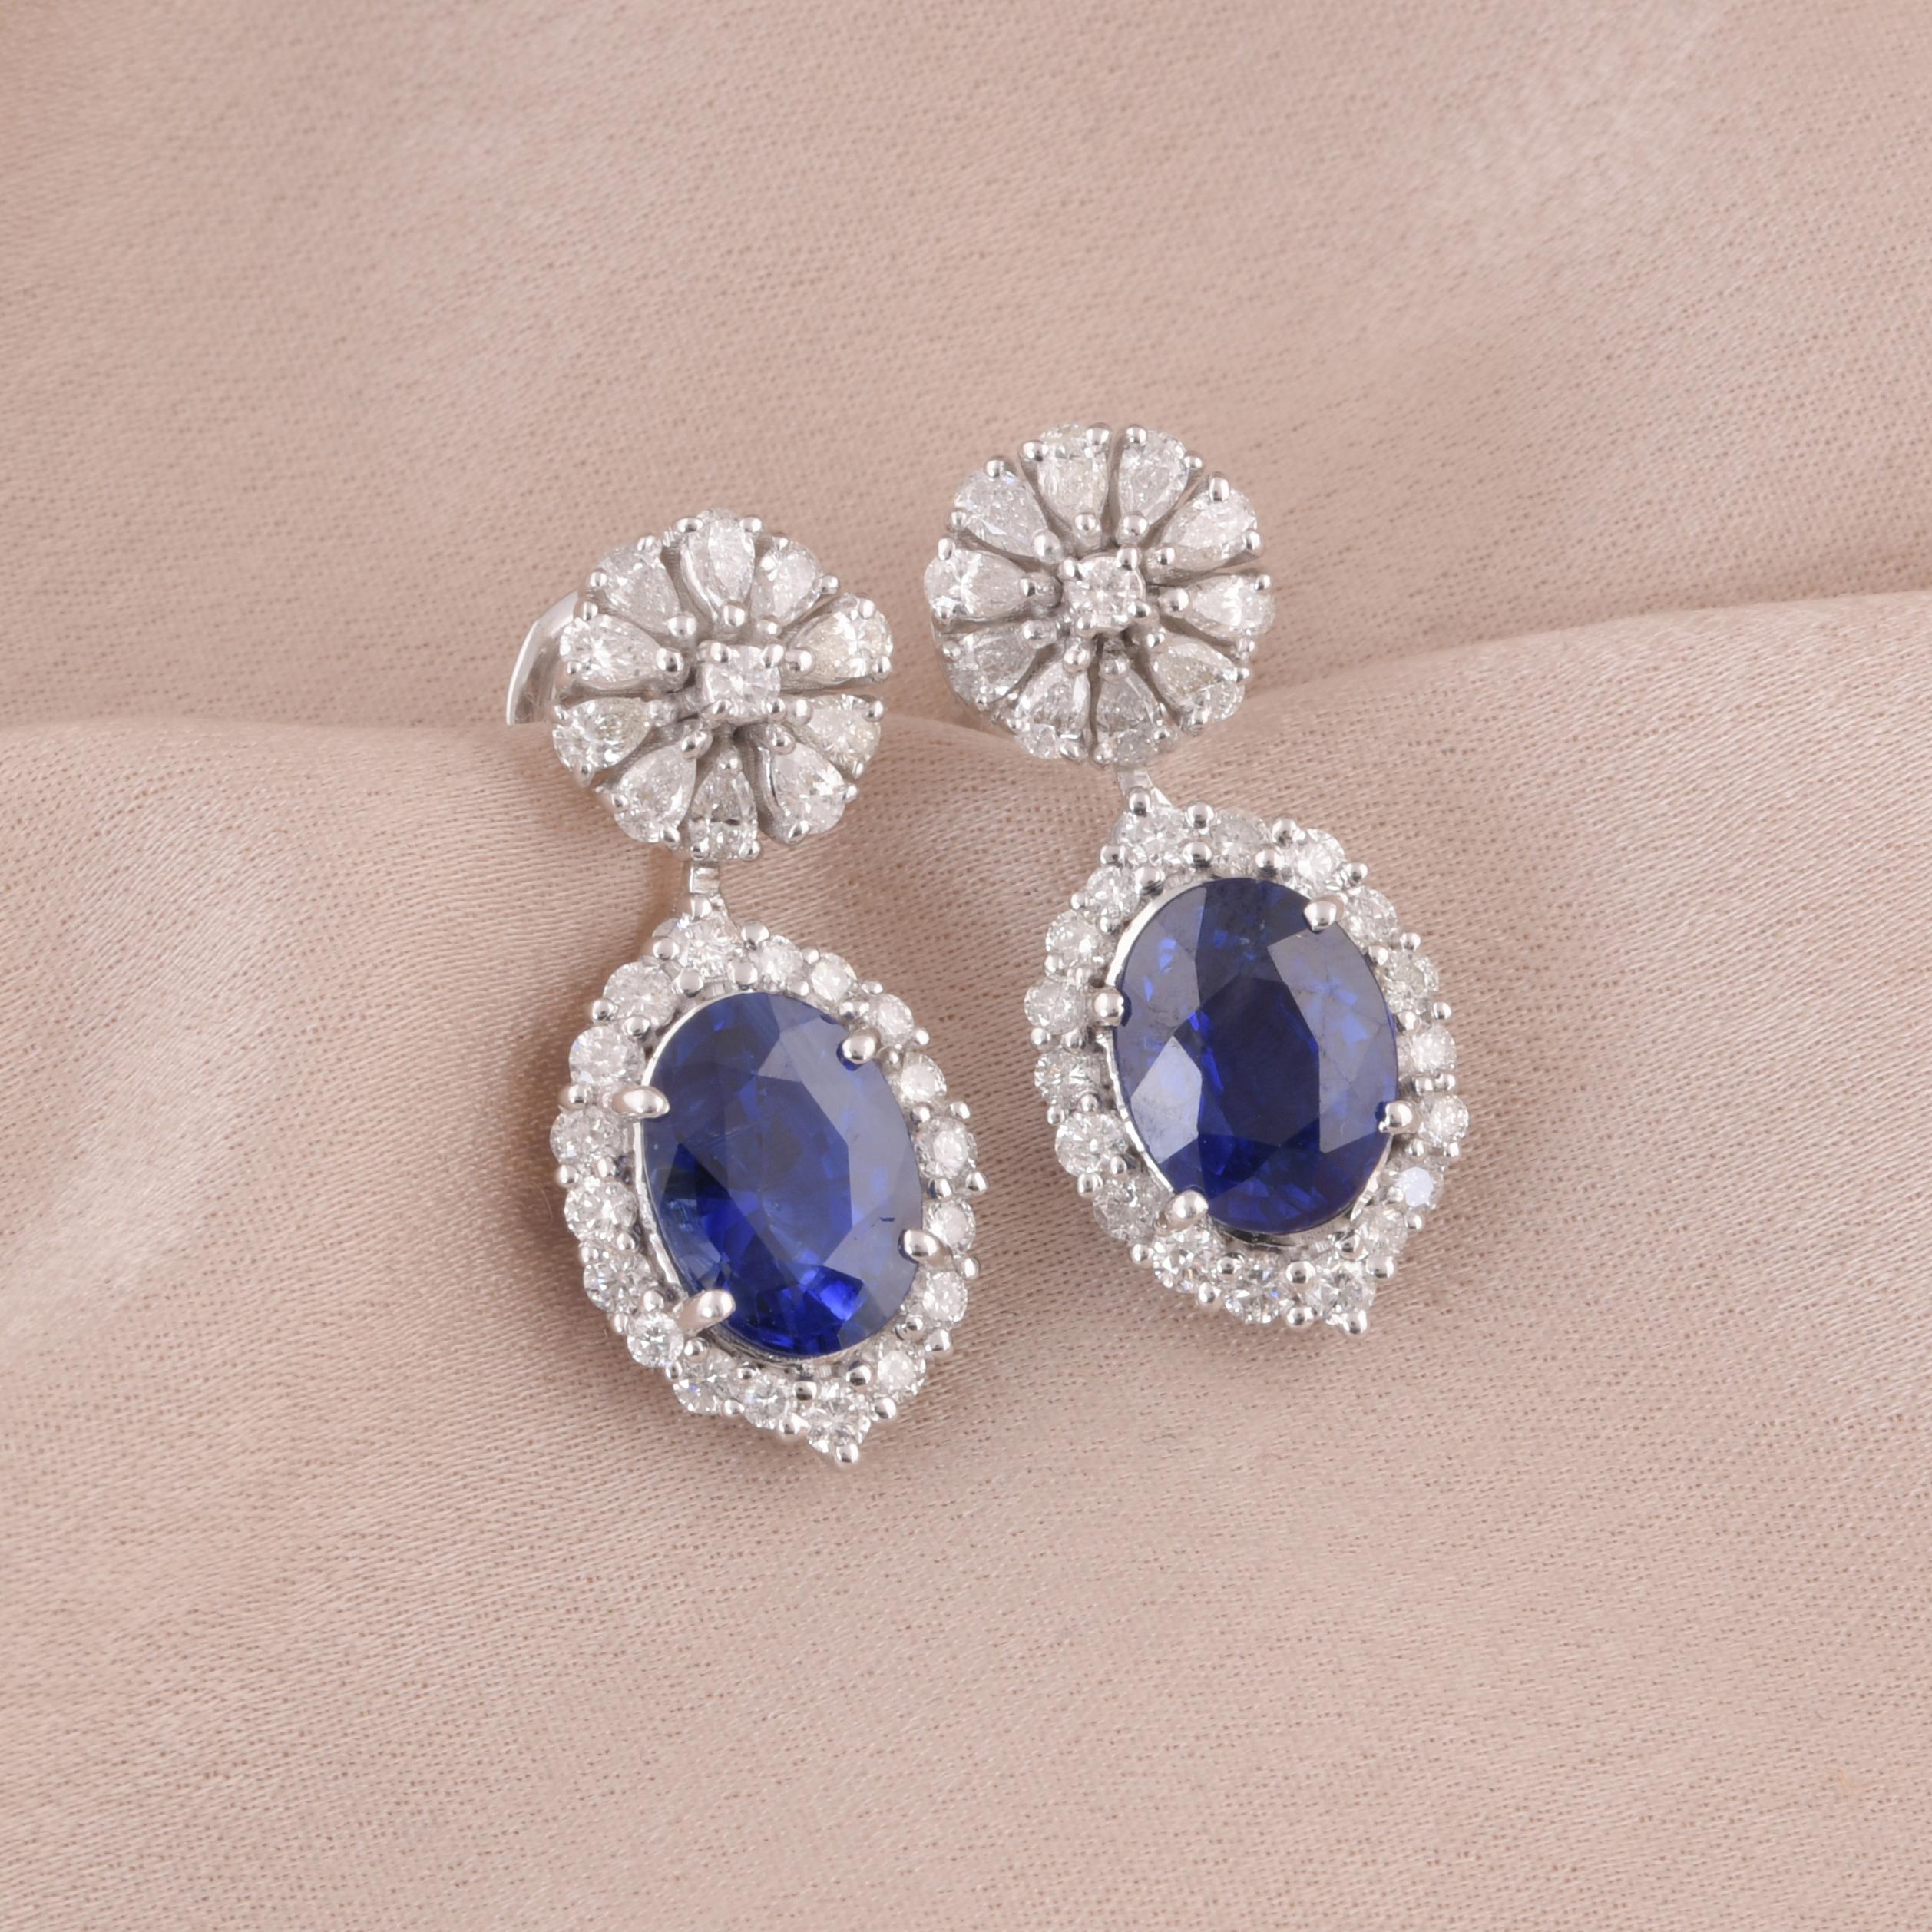 Oval Cut Blue Sapphire Gemstone Dangle Earrings Diamond 18 Karat White Gold Fine Jewelry For Sale